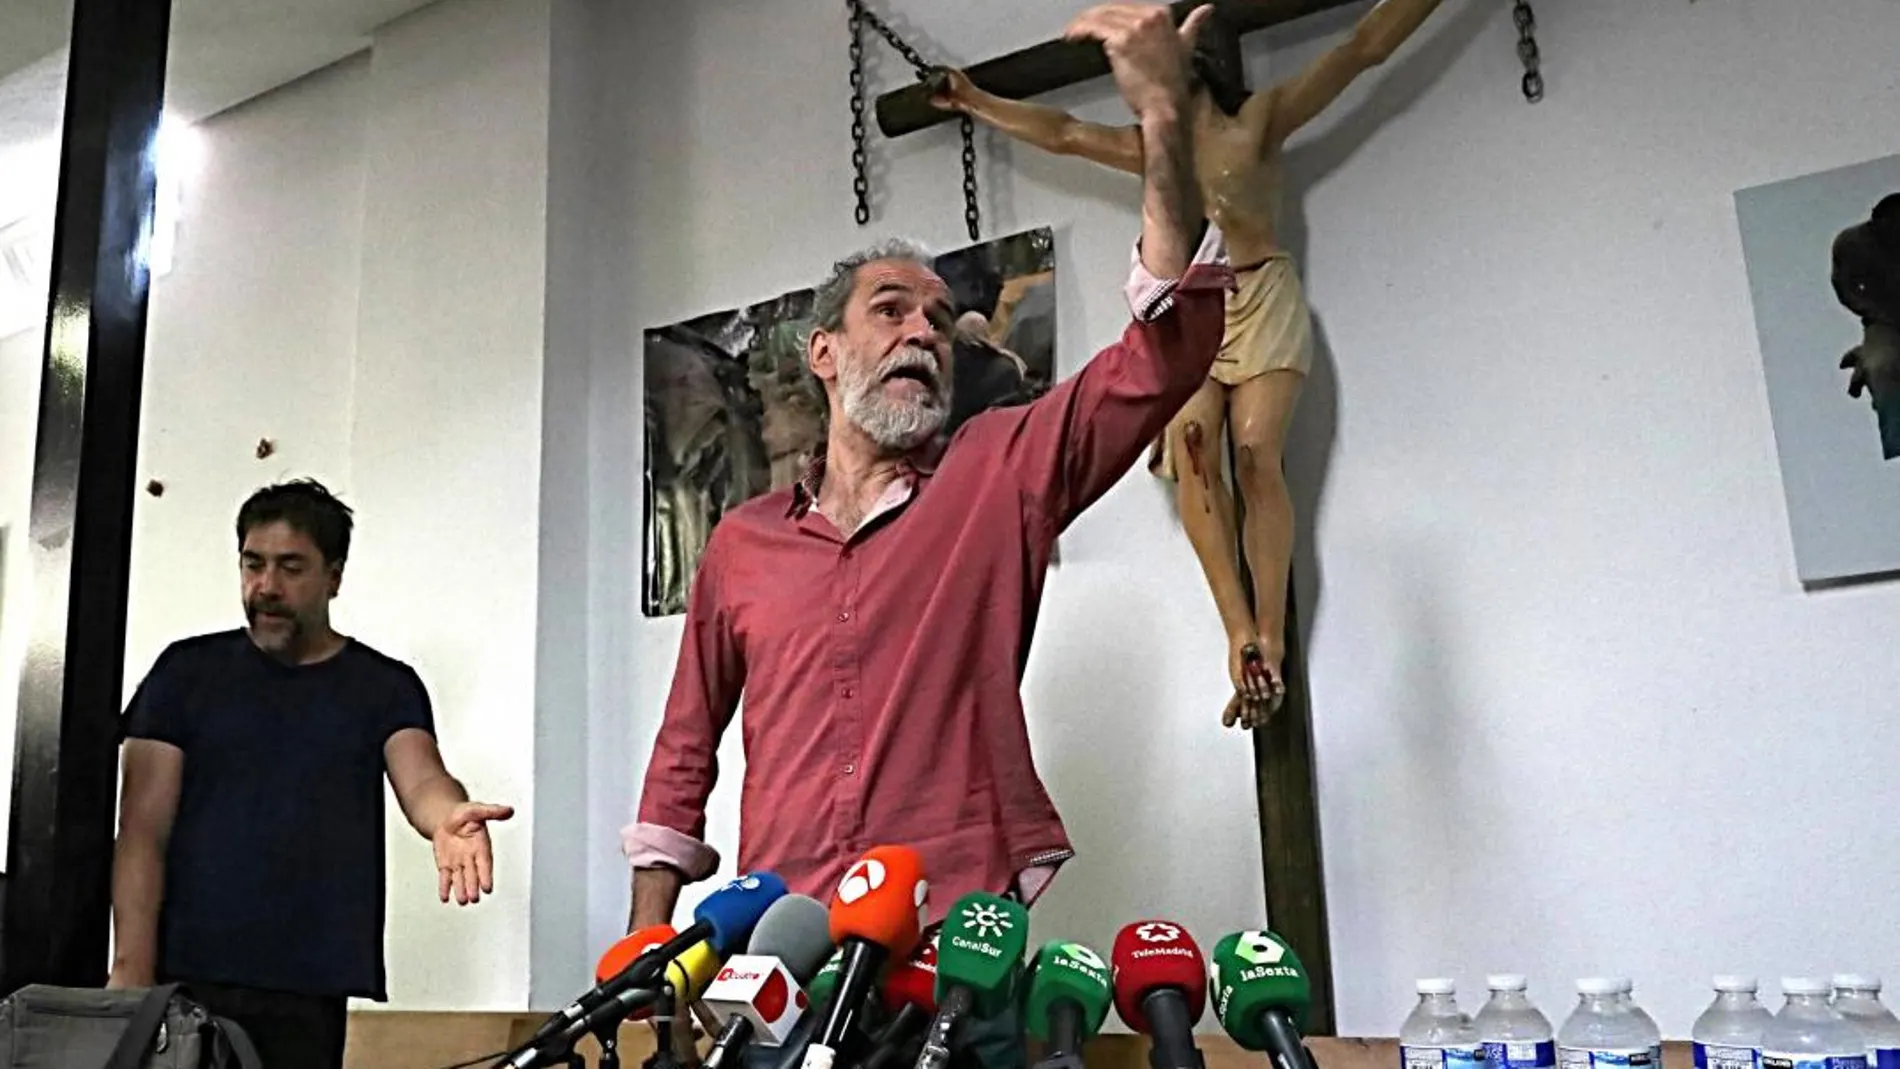 El actor Willy Toledo (d), junto a su colega Javier Bardem, durante la rueda de prensa que ha convocado en el Arzobispado de Madrid, a la misma hora que debía declarar ante un juzgado por presuntos insultos a Dios y a la Virgen. / Efe